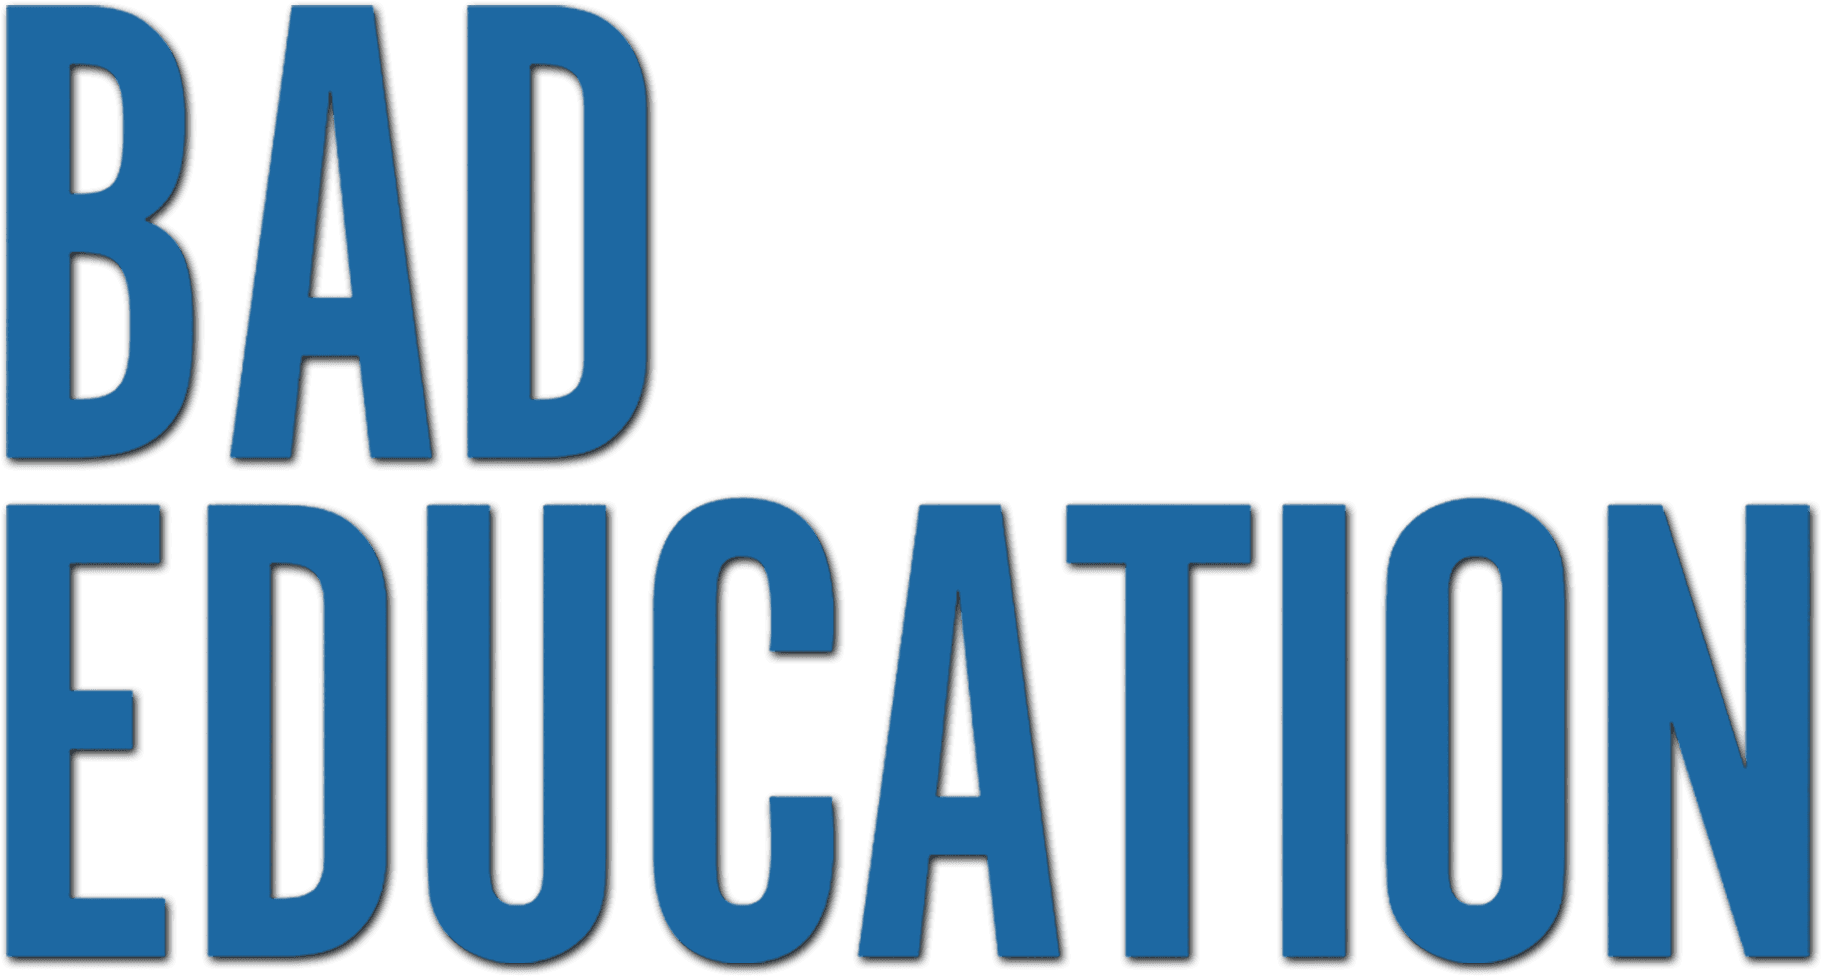 Bad Education logo